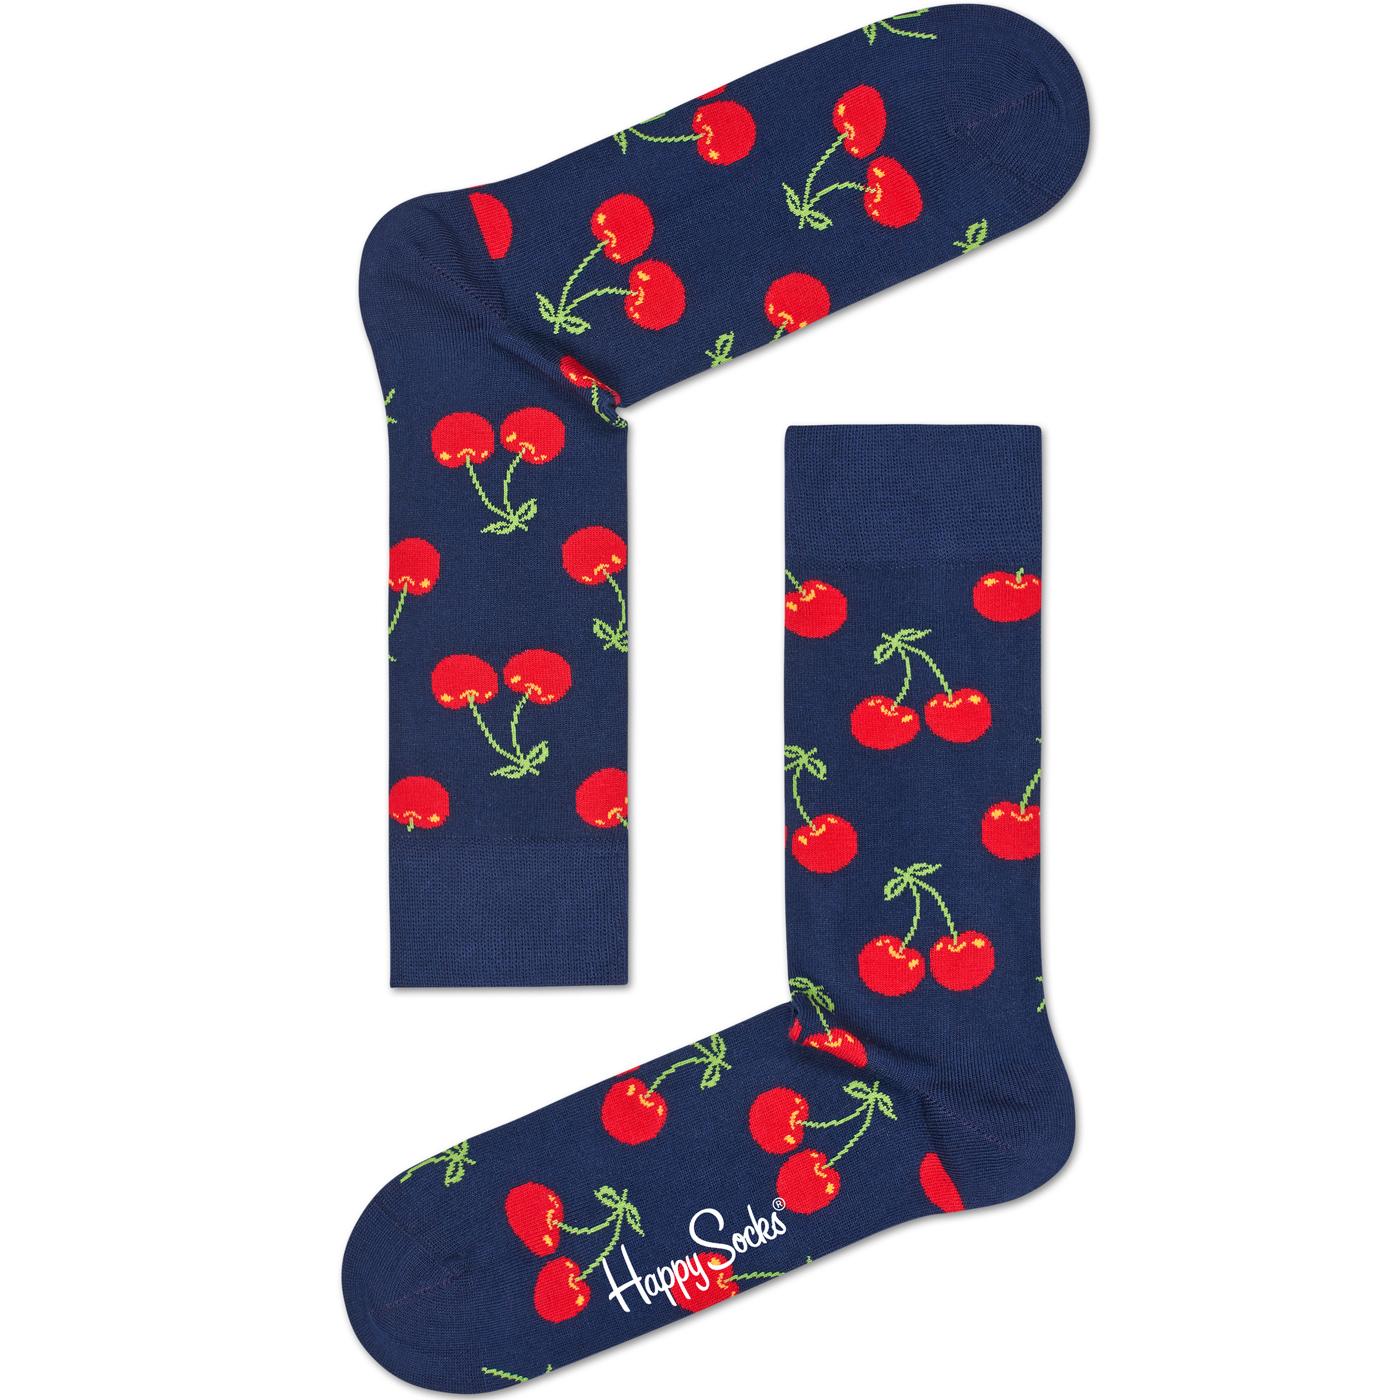 + HAPPY SOCKS Men's Retro Cherry Socks (Navy)